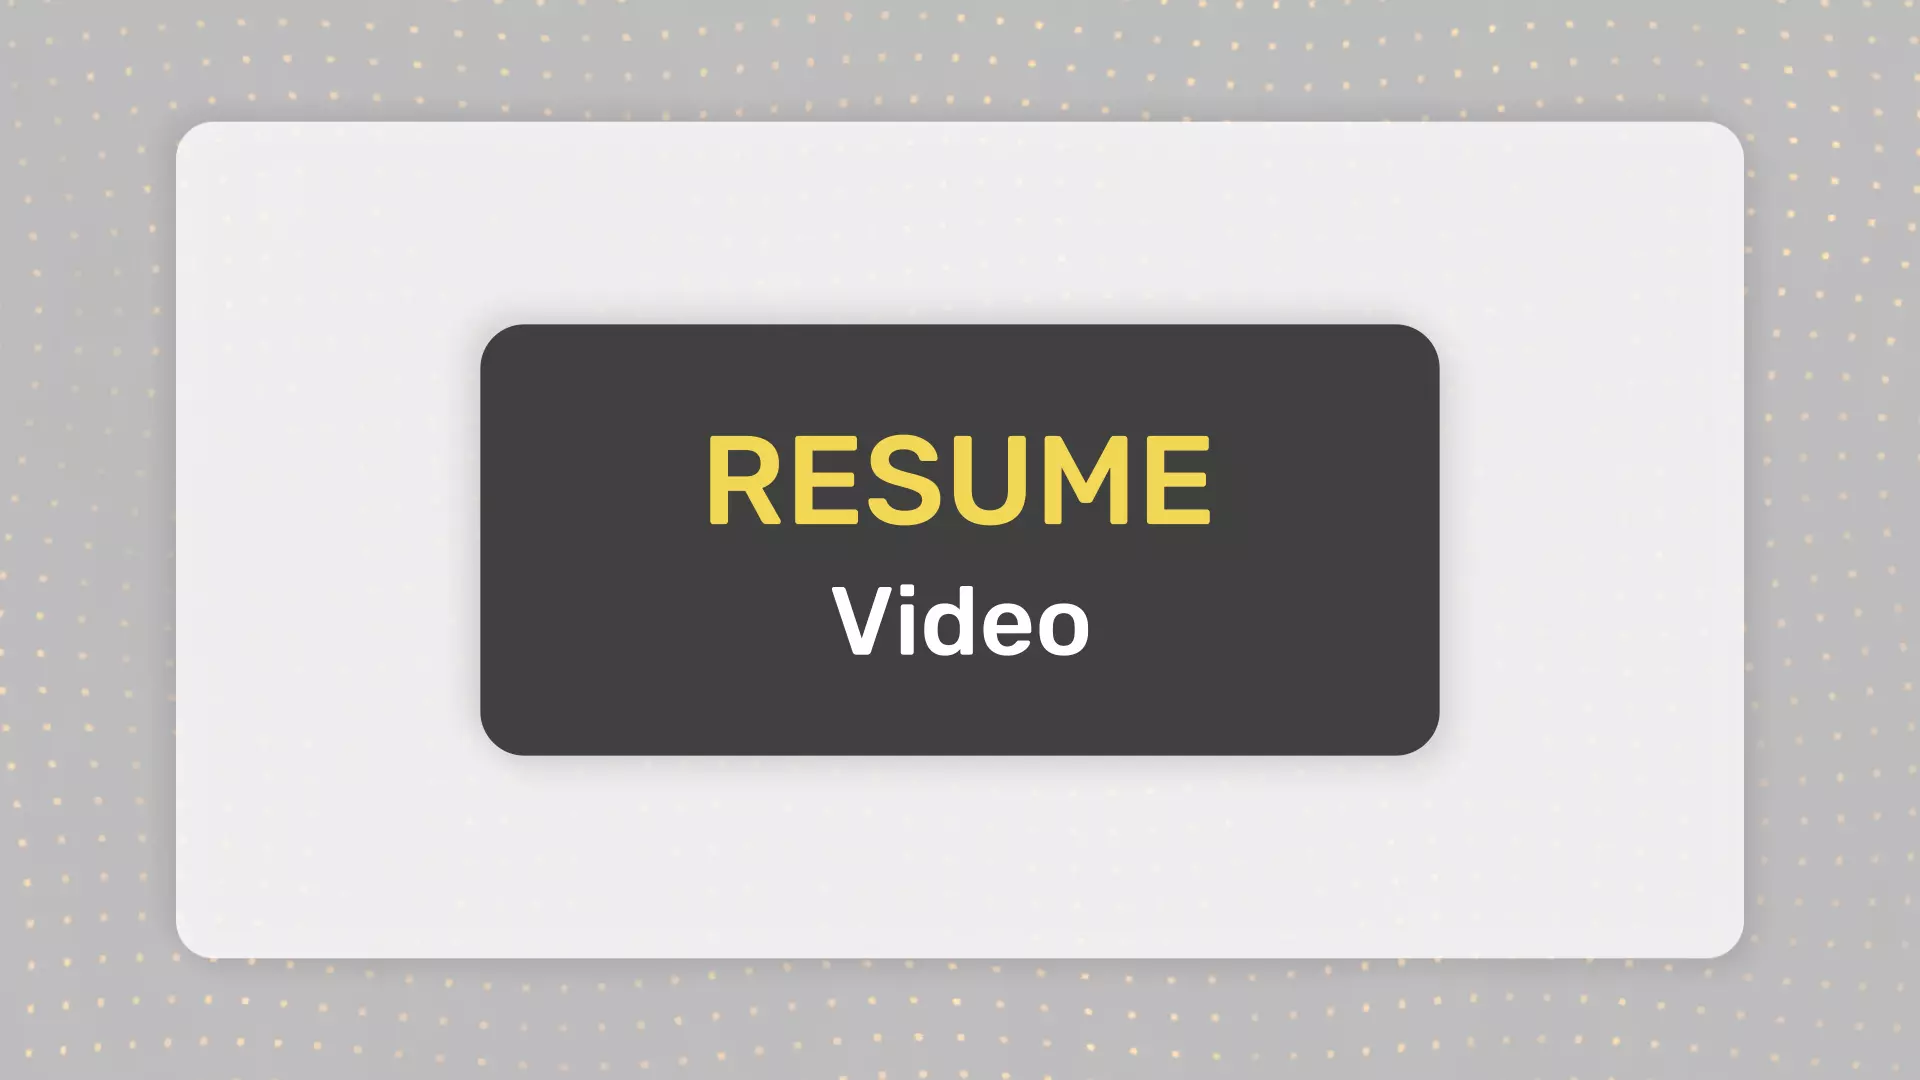 Video Resume Template | Make a Video Resume or a Video CV sẽ giúp bạn tạo ra một video giới thiệu bản thân chuyên nghiệp và ấn tượng hơn. Với những mẫu template sẵn có, các tiêu đề, chữ ký và hiệu ứng độc đáo, bạn sẽ dễ dàng thu hút sự chú ý của nhà tuyển dụng và thuyết phục họ mời bạn đến phỏng vấn.